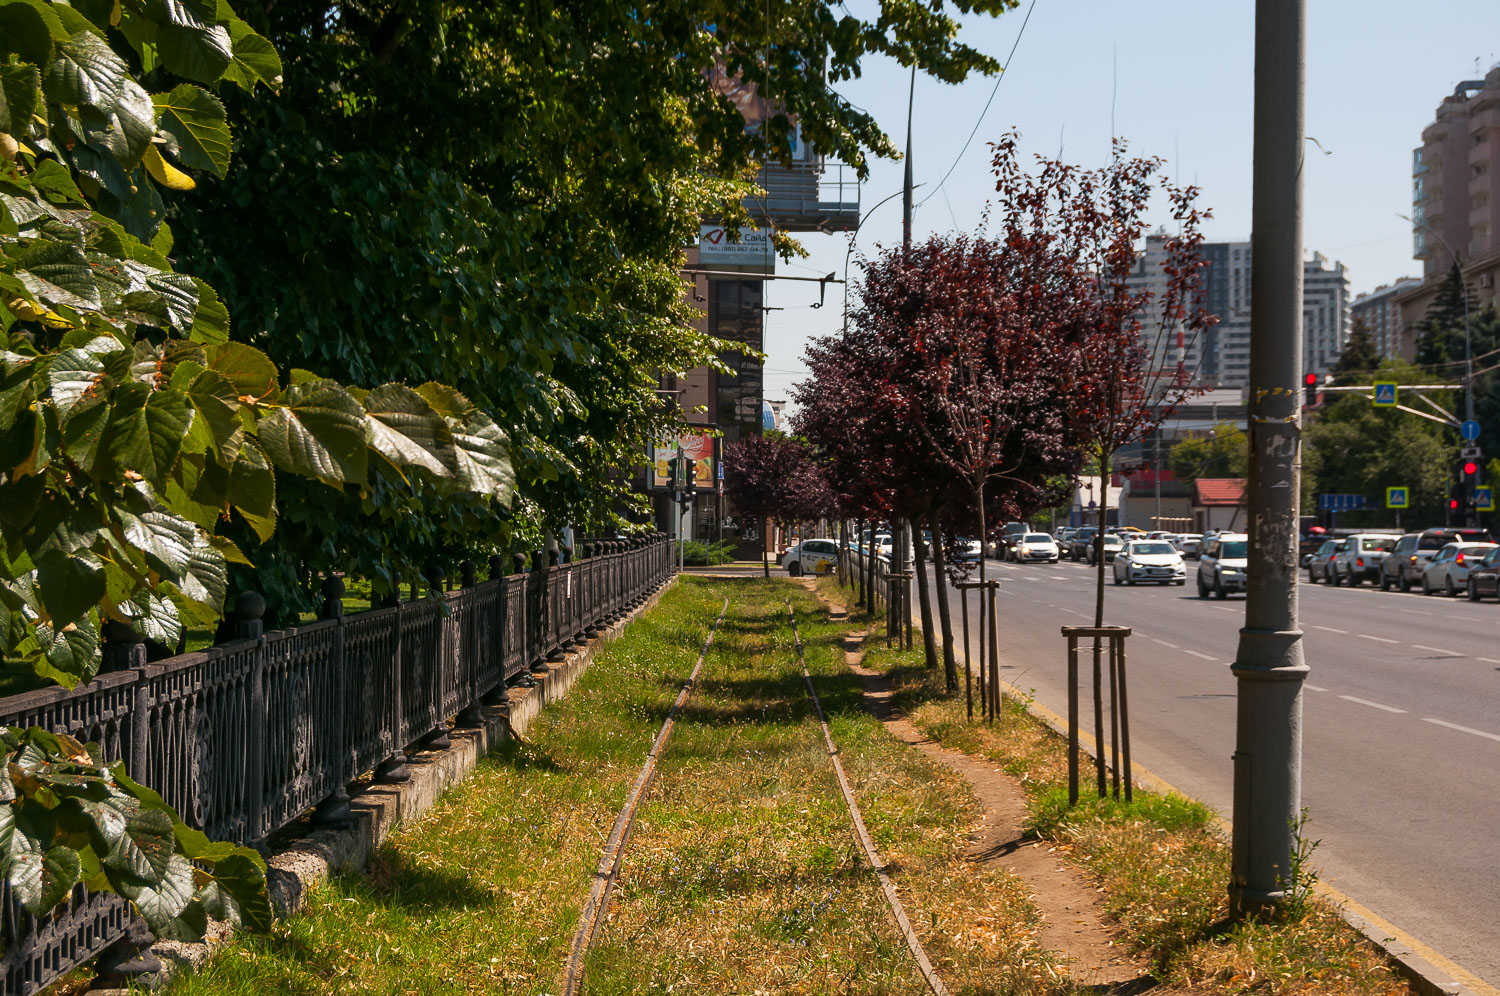 Krasnodar — Tram lines